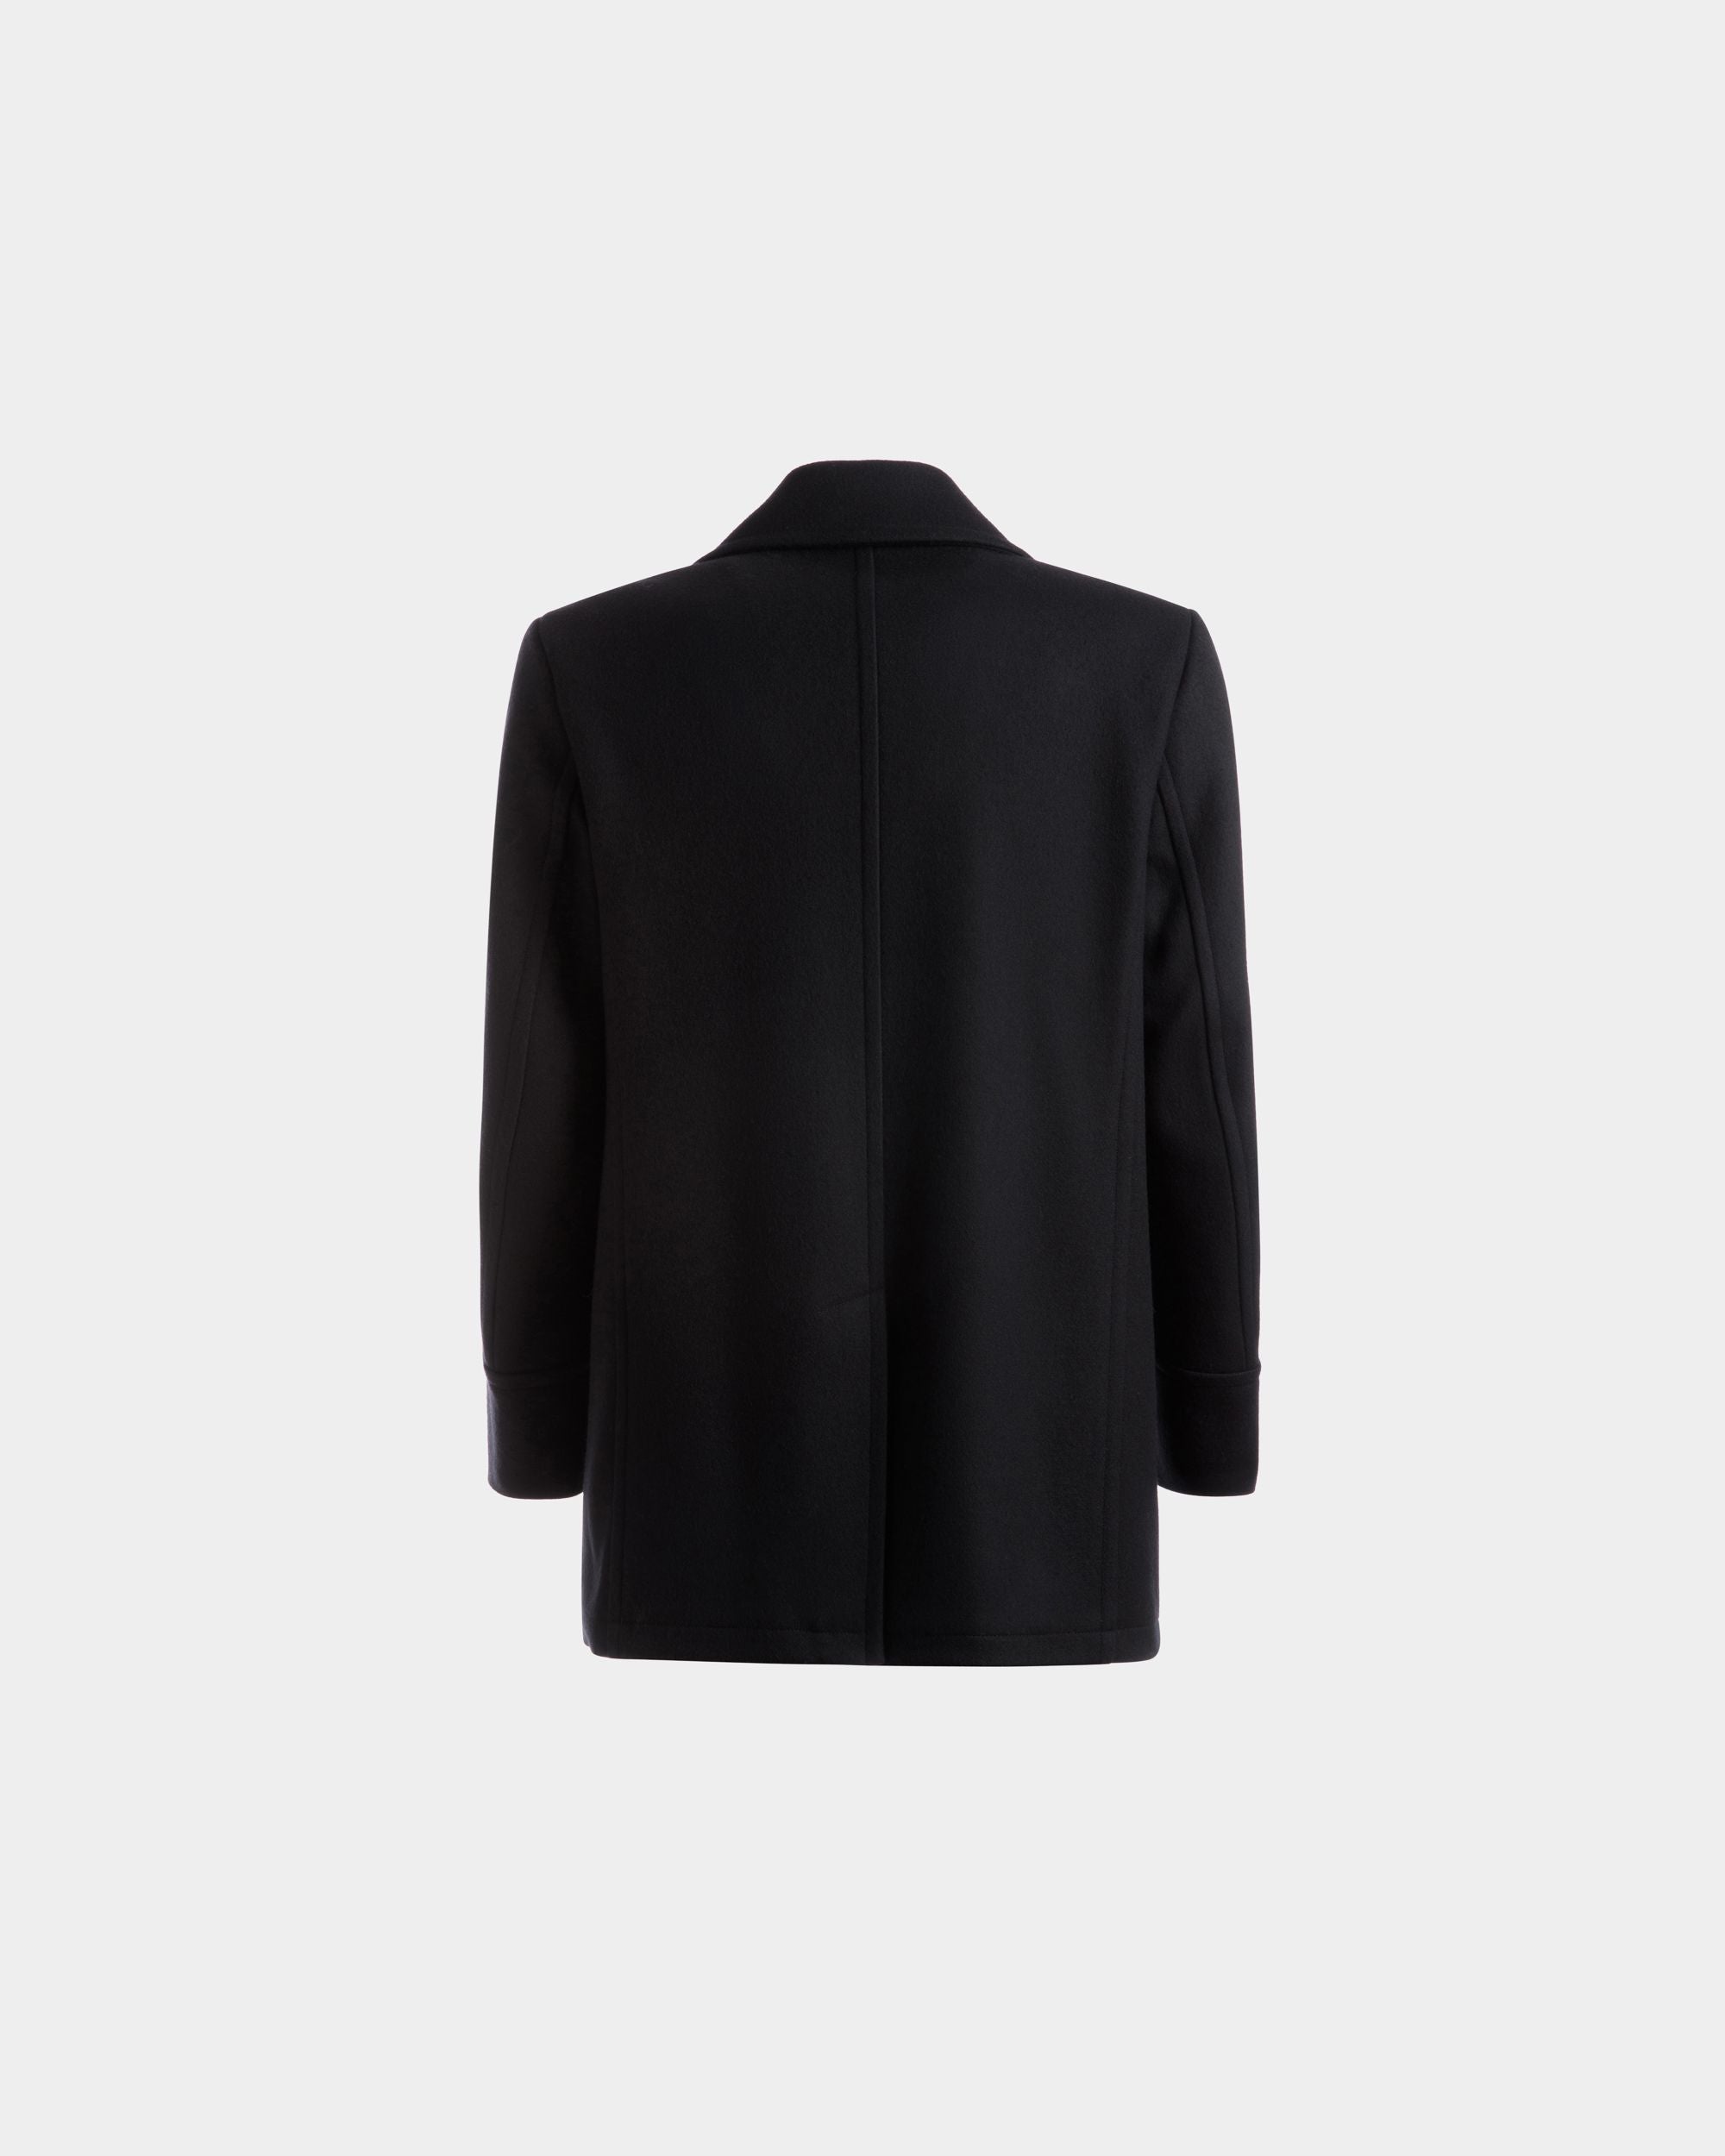 Zweireihiger Mantel | Jacken und Mäntel für Herren | Marineblaues Wollgemisch | Bally | Still Life Rückseite